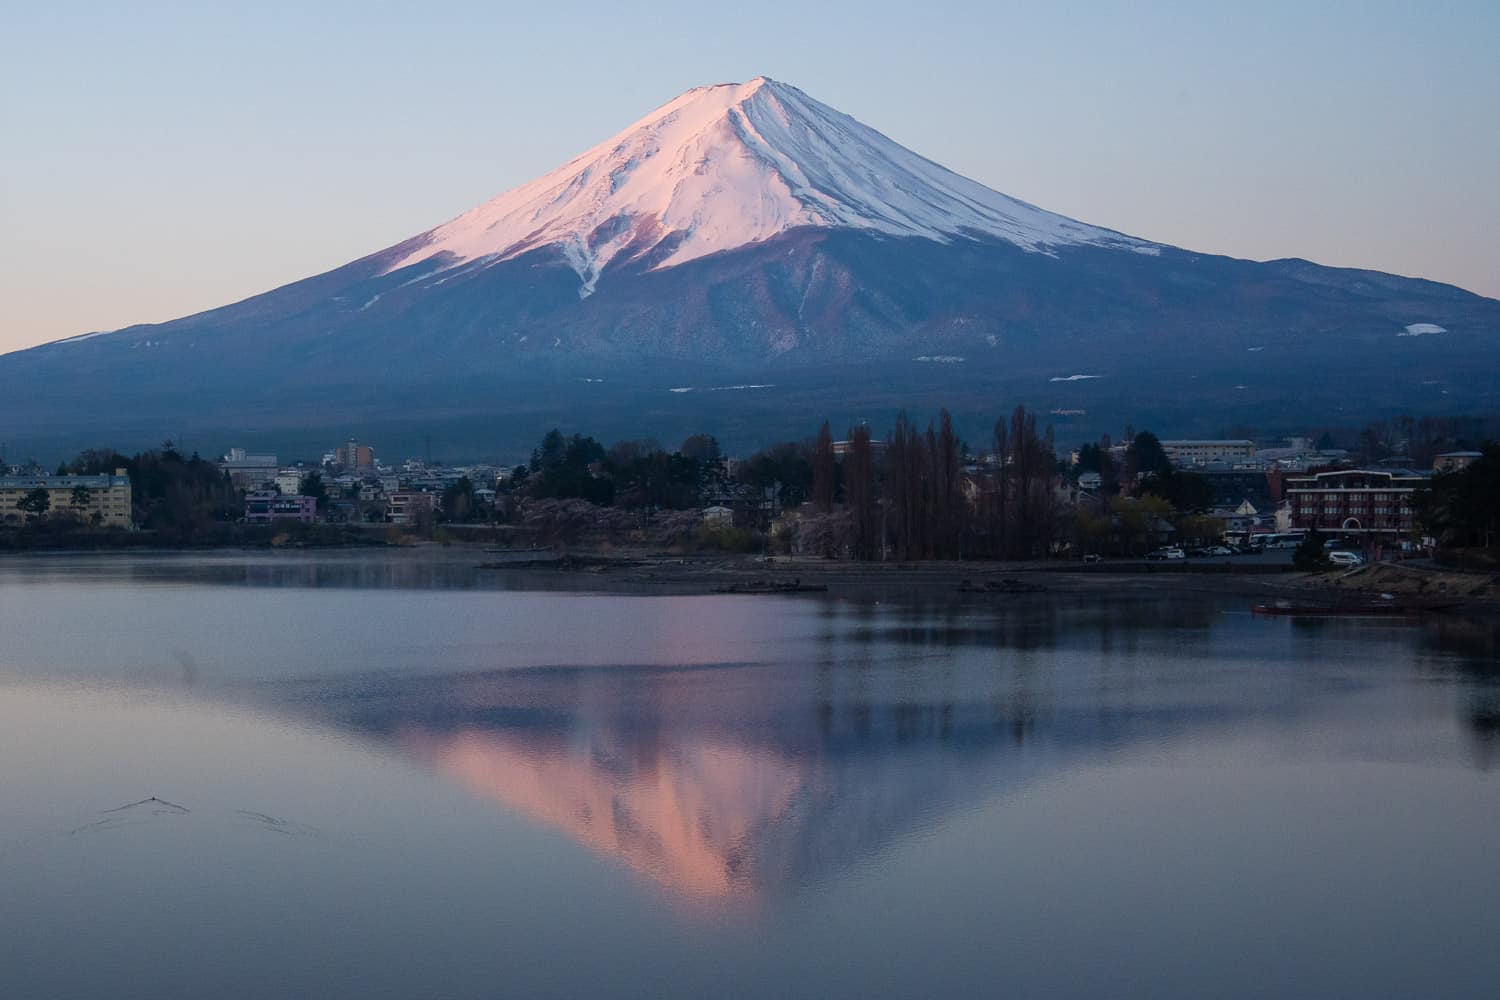 Mount Fuji at Lake Kawaguchiko at sunrise from the north shore